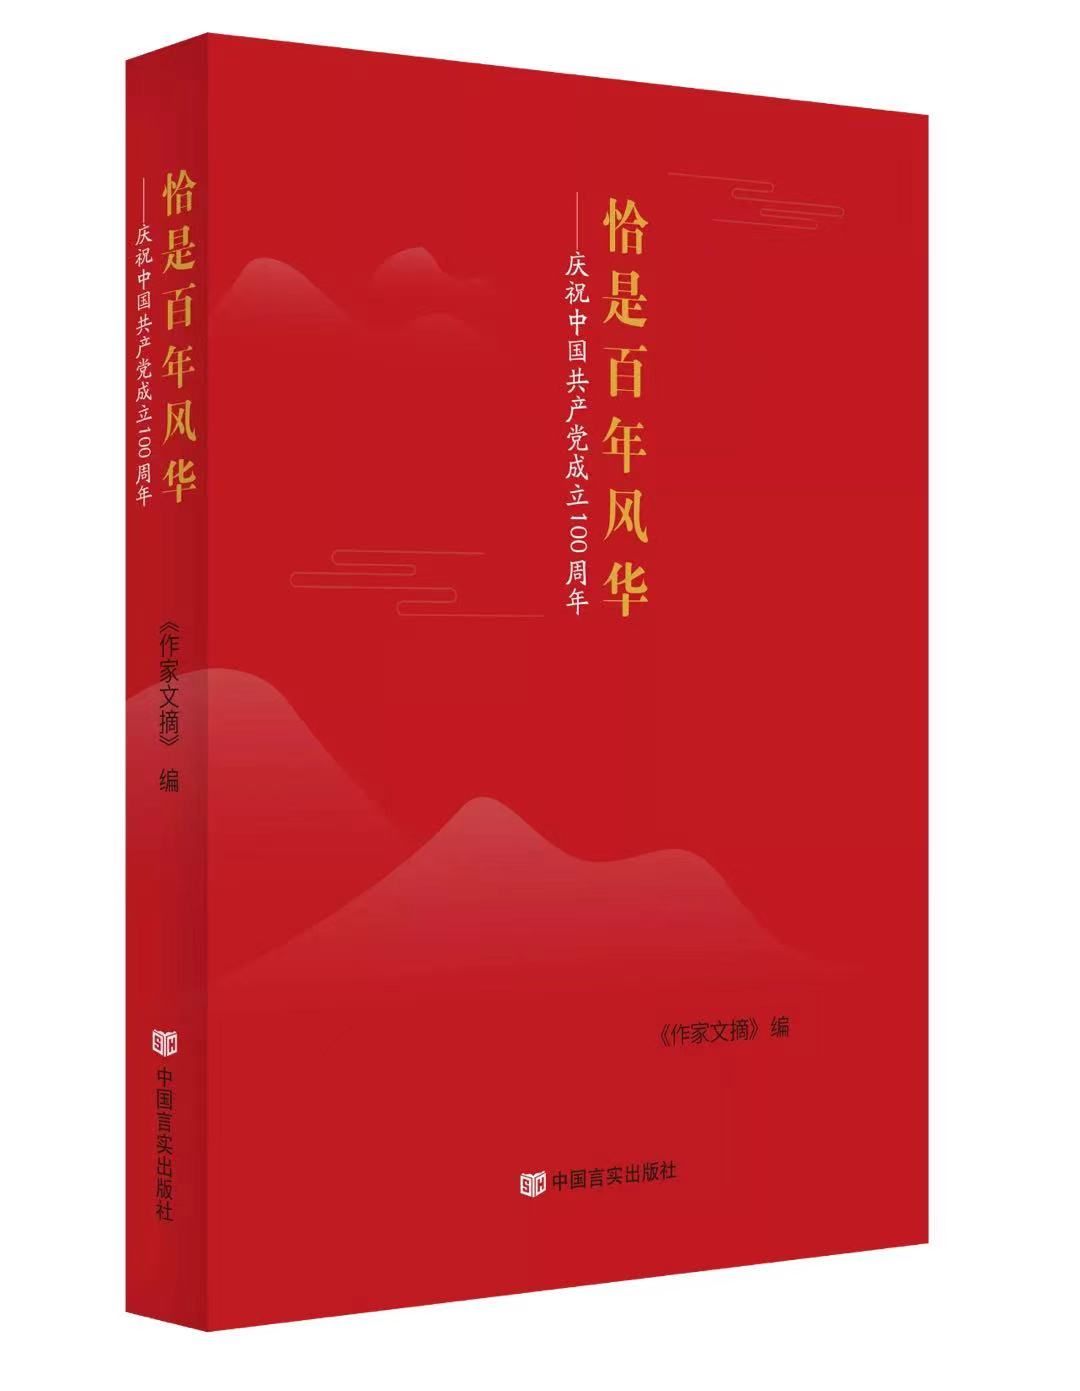 “恰是百年风华——庆祝中国共产党成立100周年”主题征文获奖作品揭晓